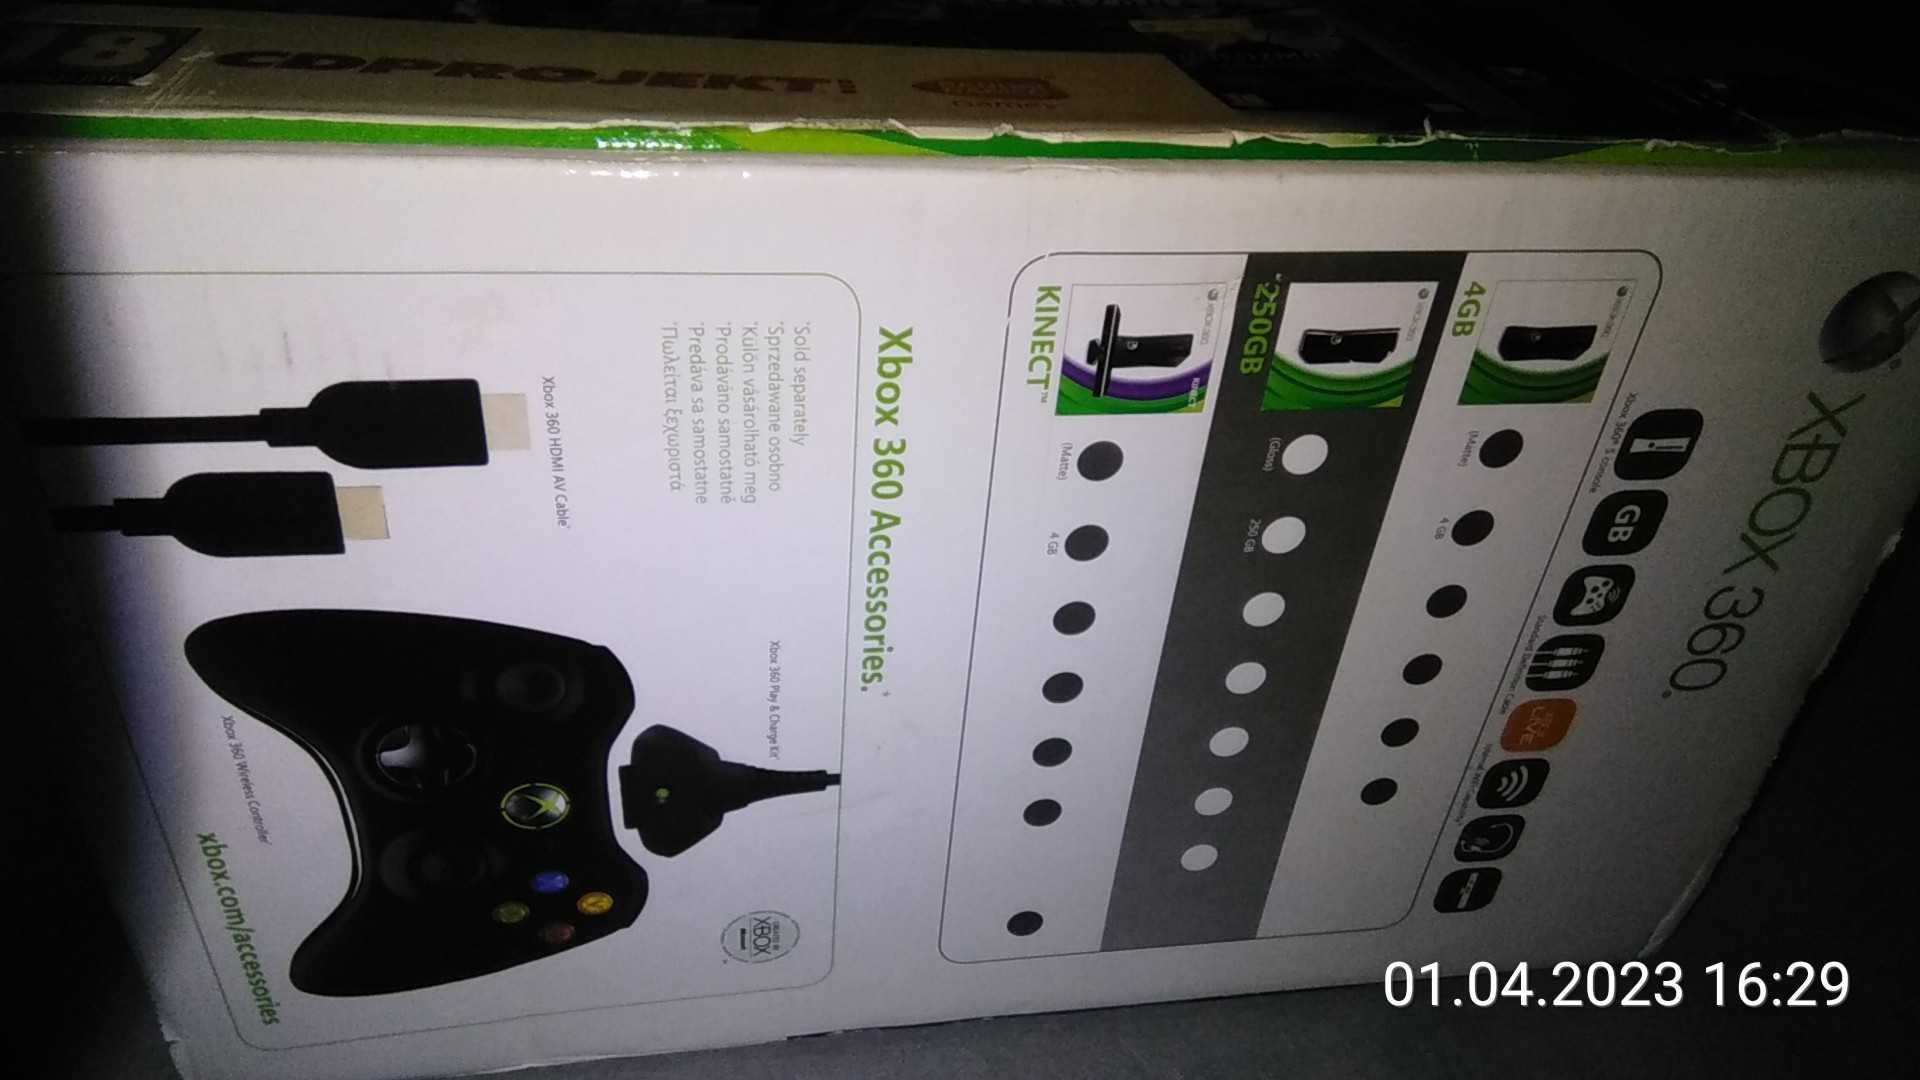 Oryginalne pudełko Xbox 360 z Wiedźminem Zabójcy królów